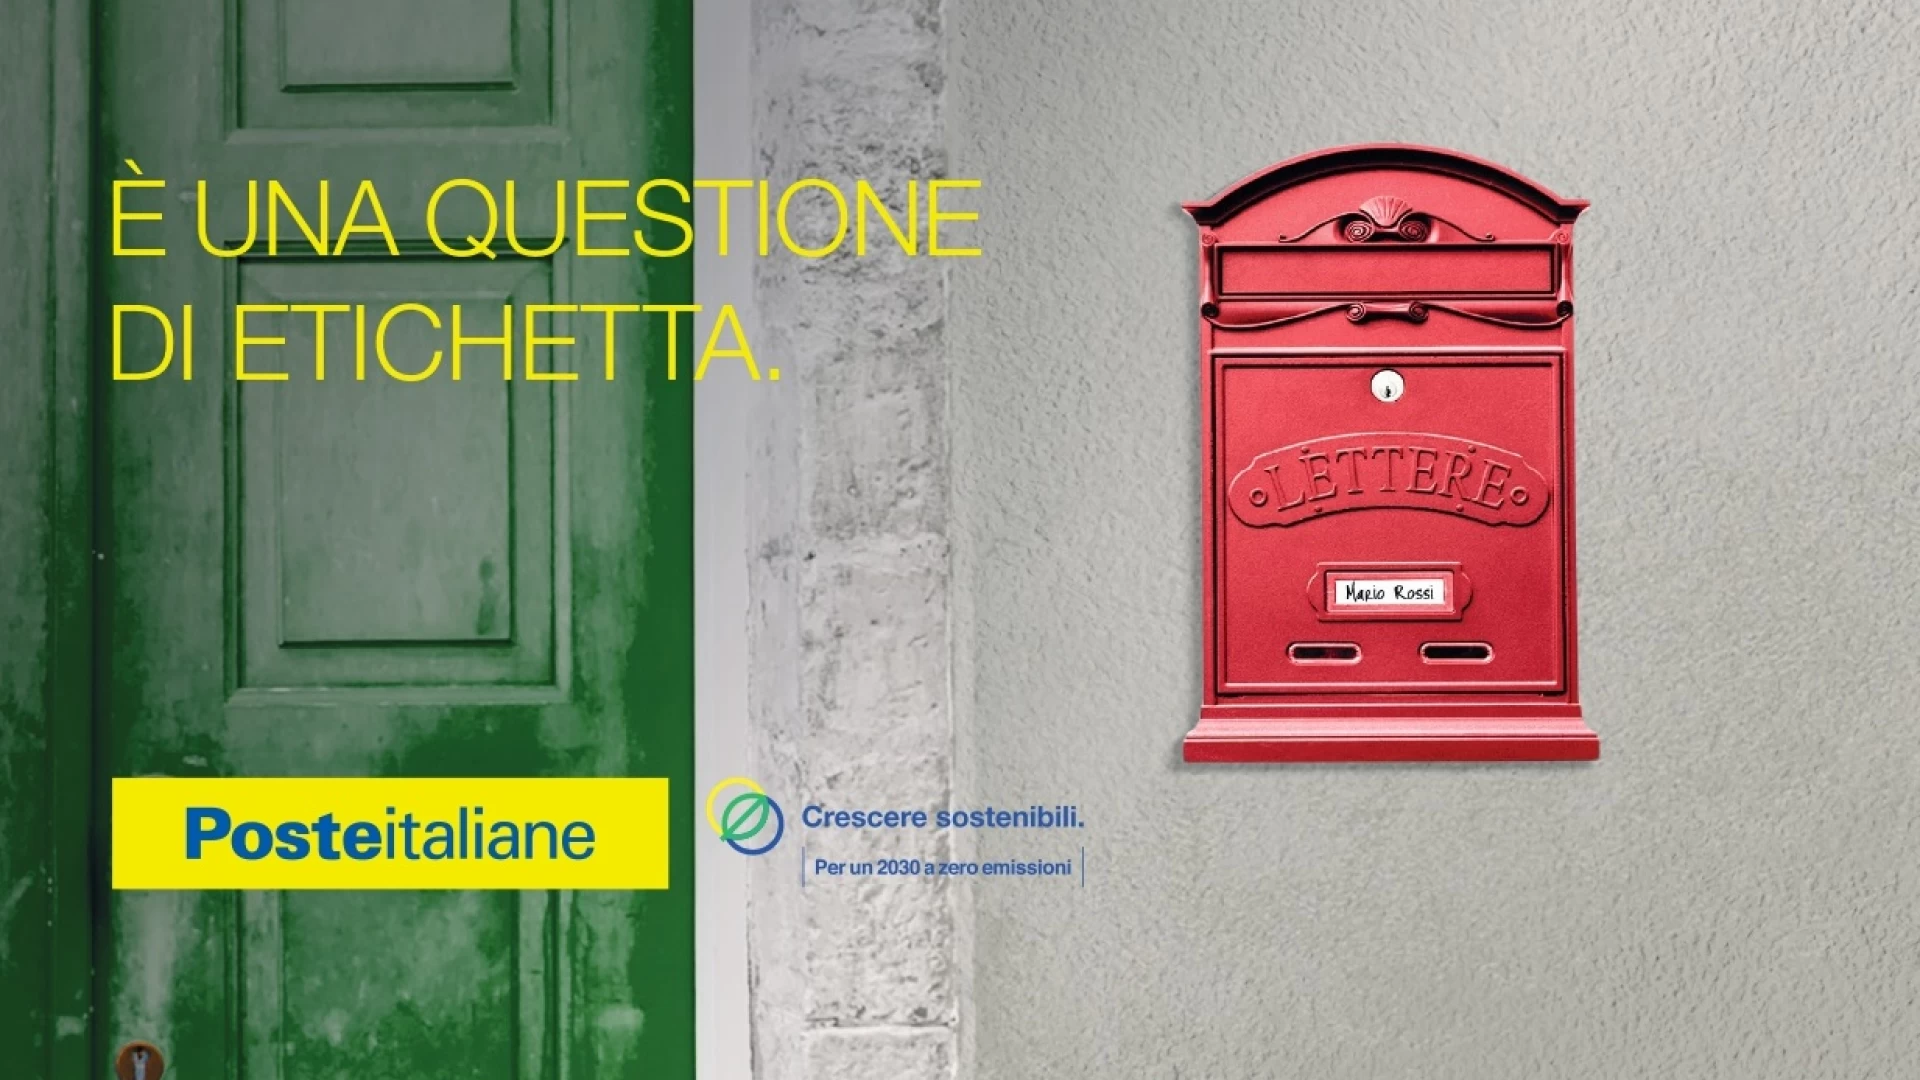 Poste Italiane in Molise con l’iniziativa “Etichetta la Cassetta”, si regolarizza la cassetta anonima della posta.